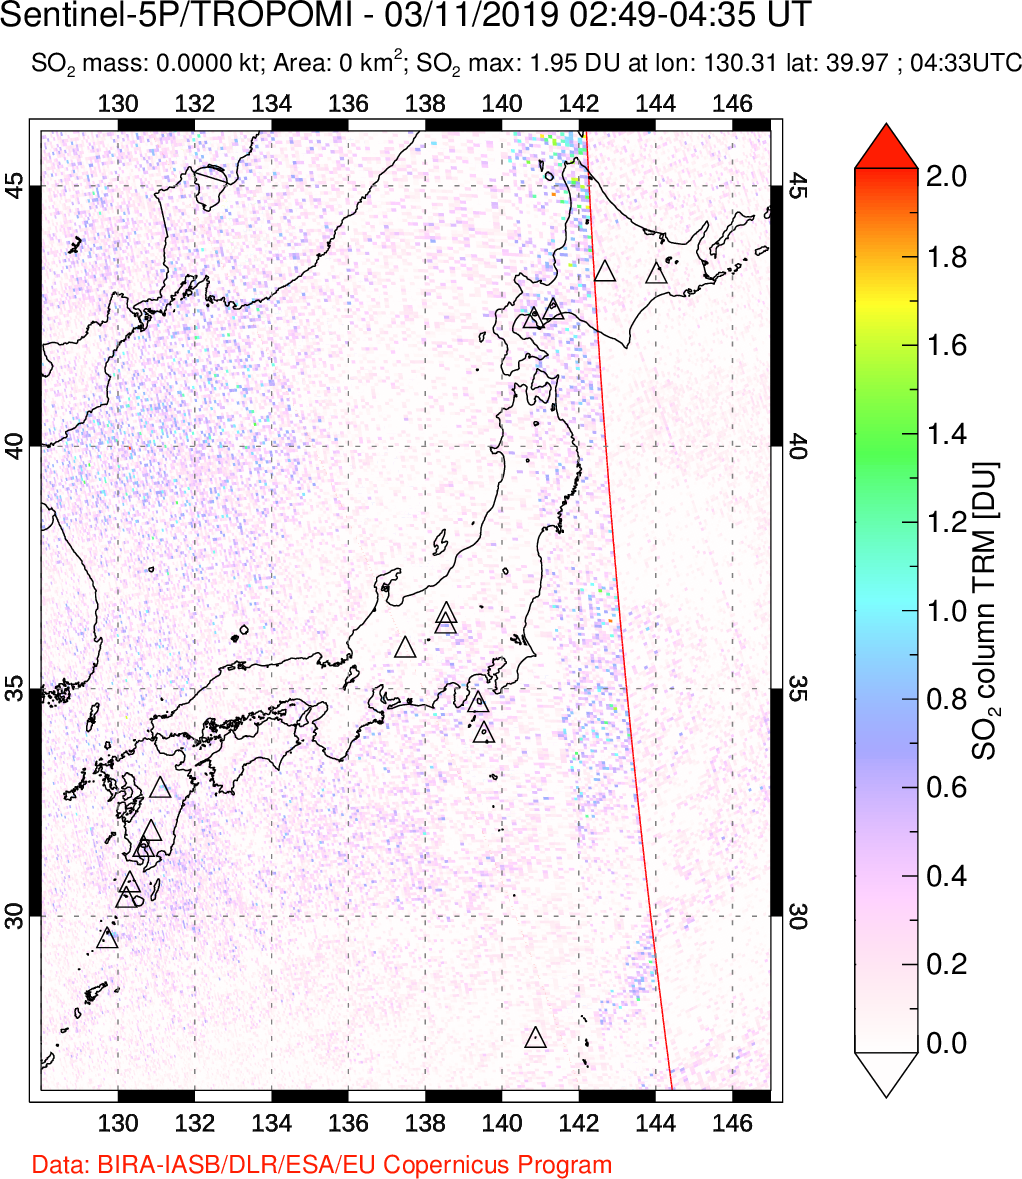 A sulfur dioxide image over Japan on Mar 11, 2019.